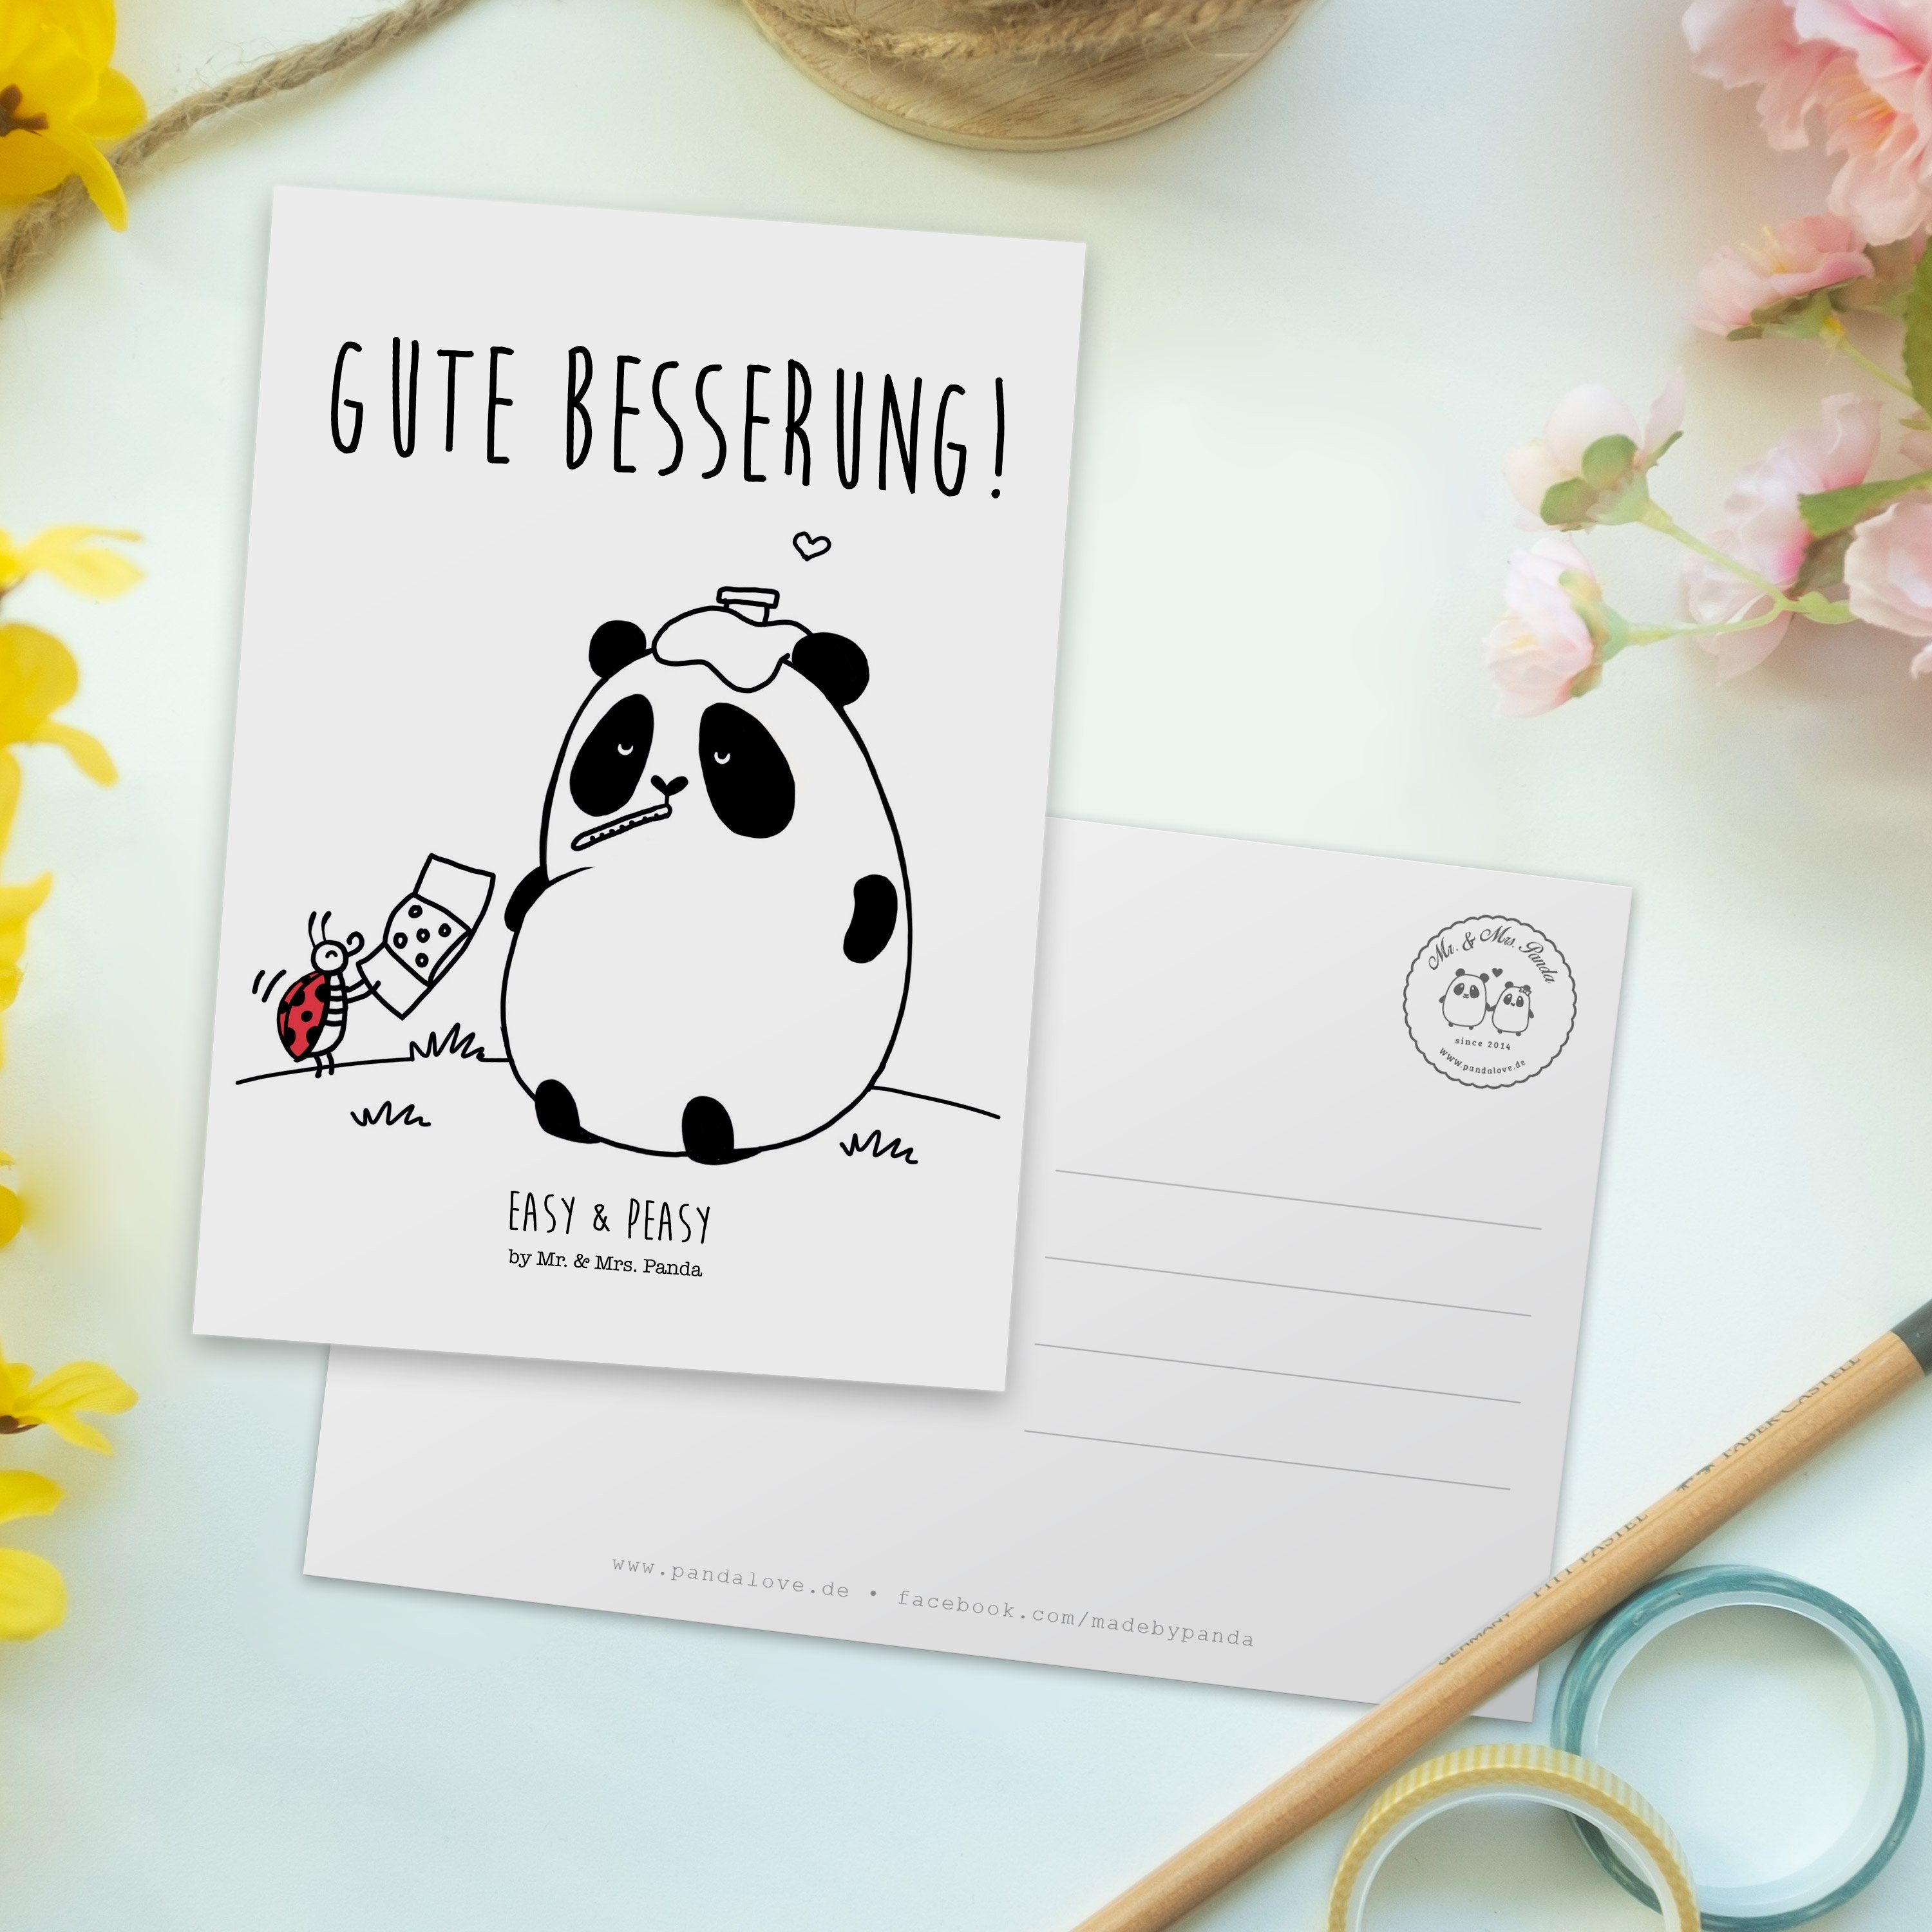 Mrs. - Easy Geschenk, Peasy Panda Einladung, Besserung Postkarte Weiß - Mr. & Gute & Grußkarte